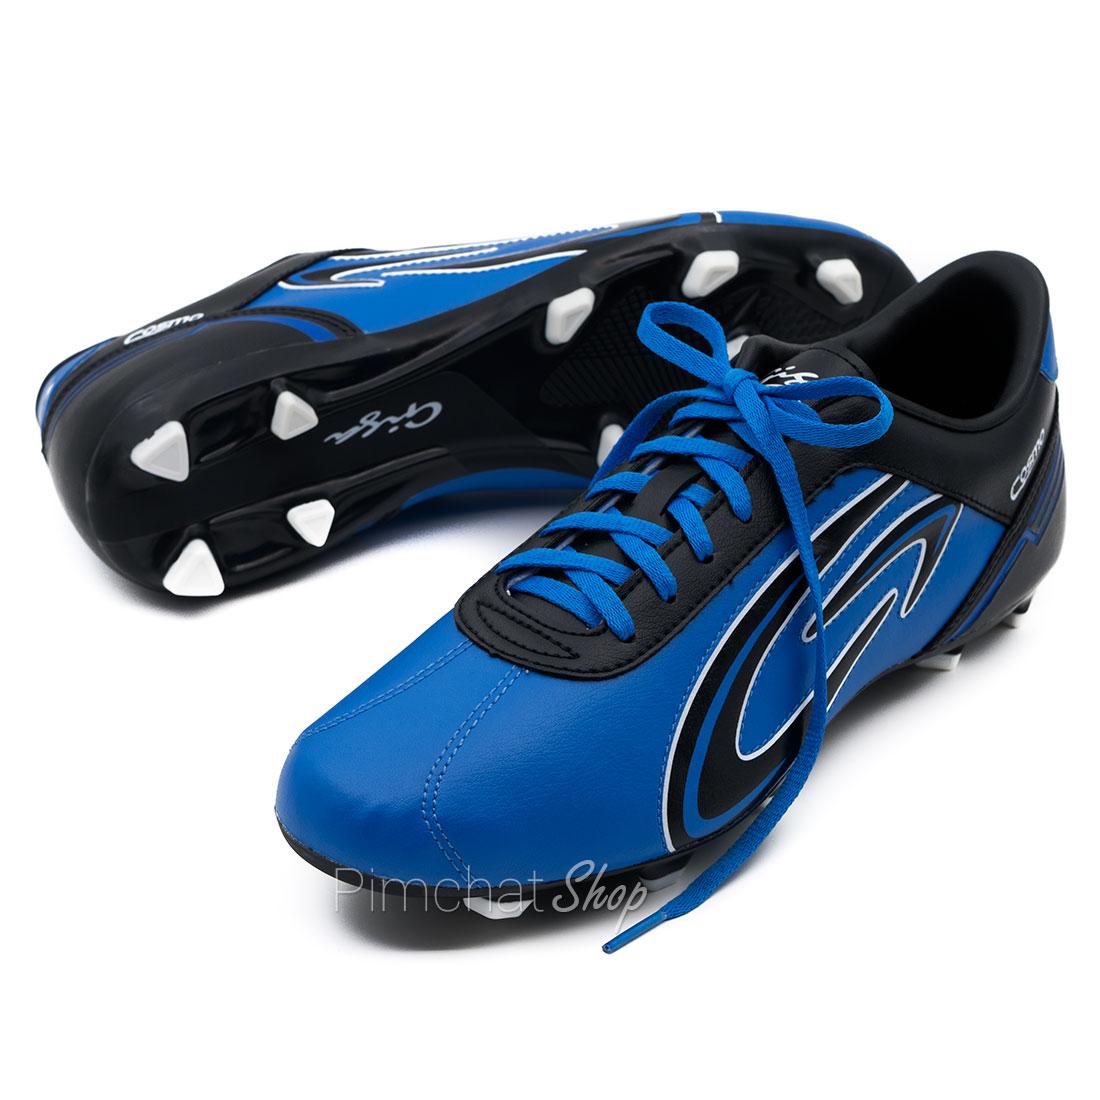 GIGA รองเท้าฟุตบอล รองเท้าสตั๊ดเด็ก รุ่น FBG20S สีน้ำเงิน